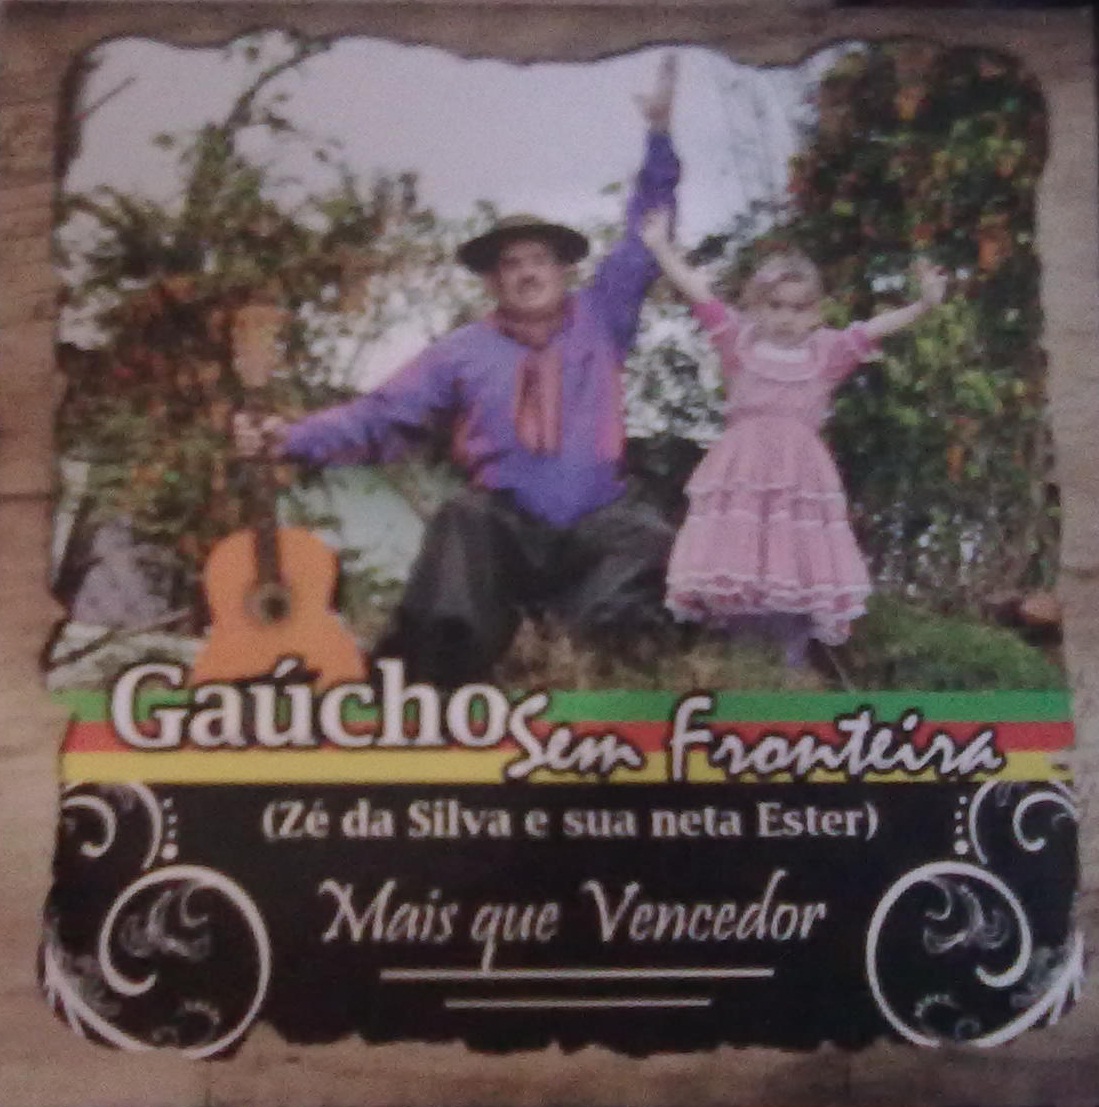 download gaucho gospel